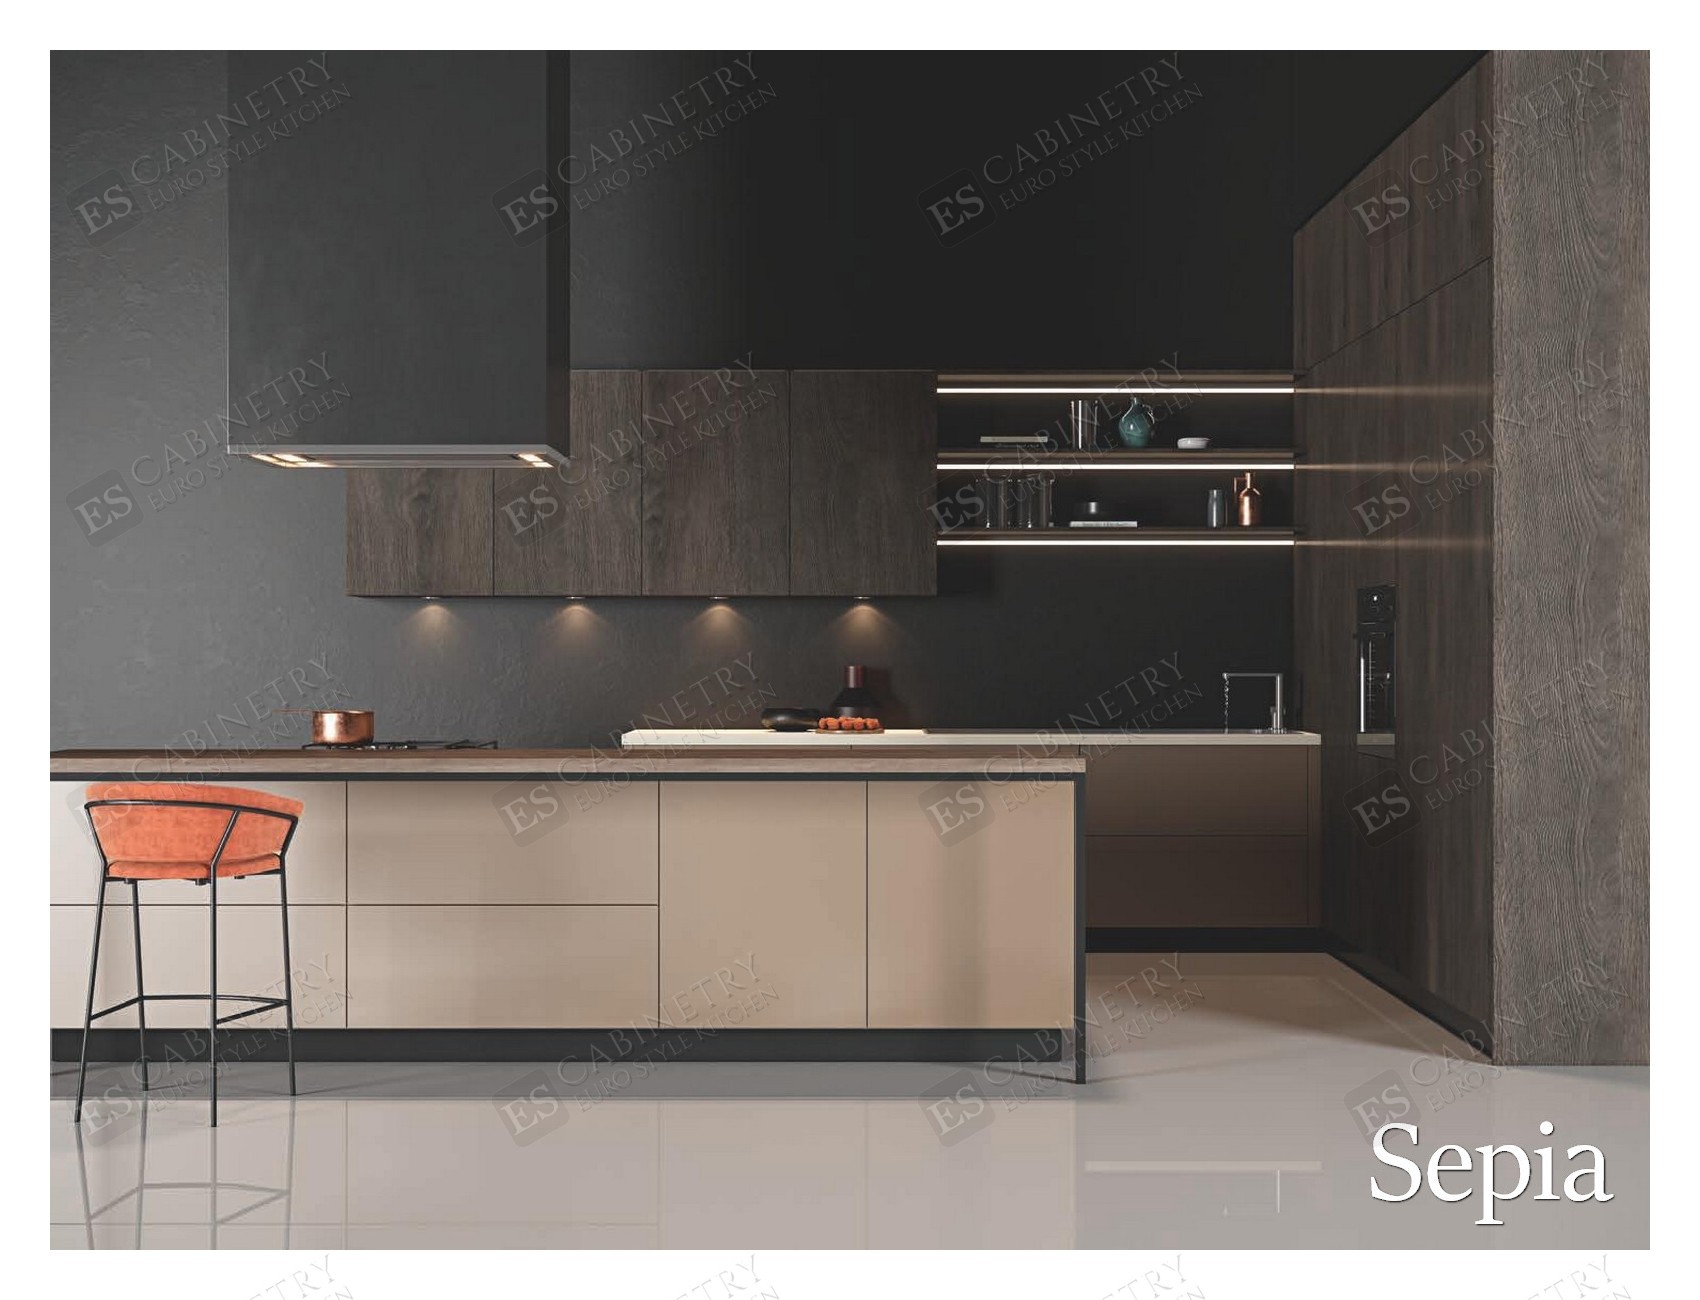 Sepia | European style kitchen design